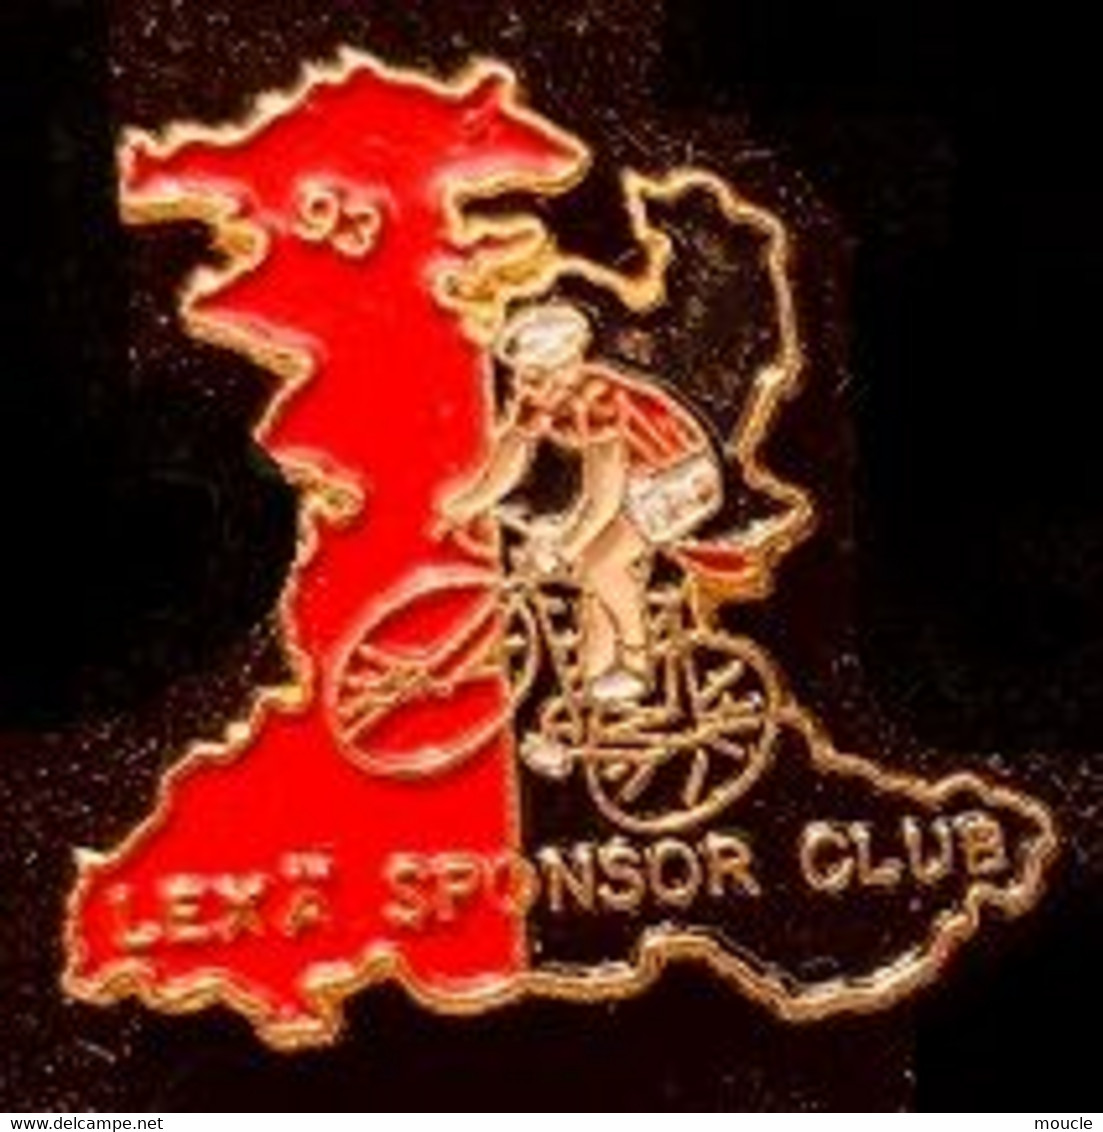 CYCLISME - VELO - BIKE - CYCLISTE - LEXÄ SPONSOR CLUB - VELO CLUB - 1993 - 93  -                    (27) - Cyclisme